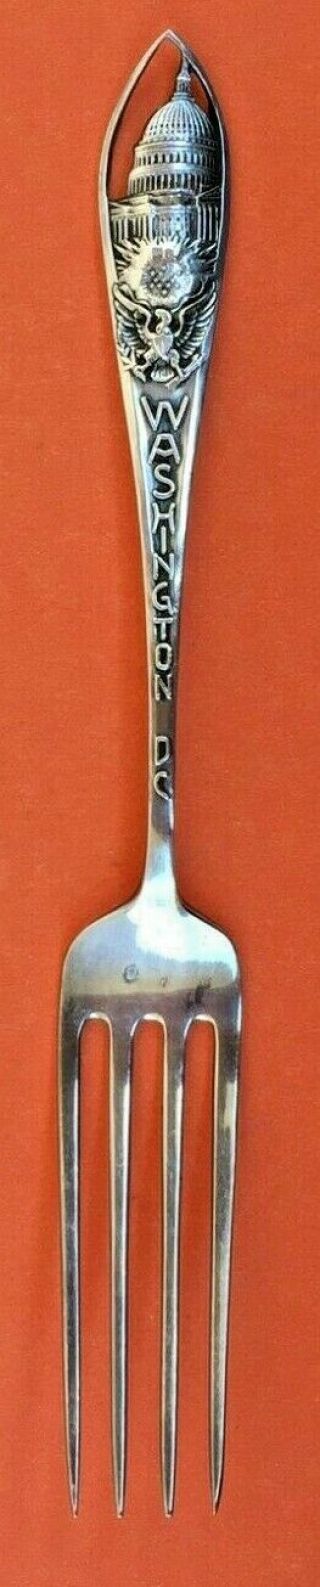 Rare Fork Washington Dc Mount Vernon Sterling Silver Souvenir Not Spoon